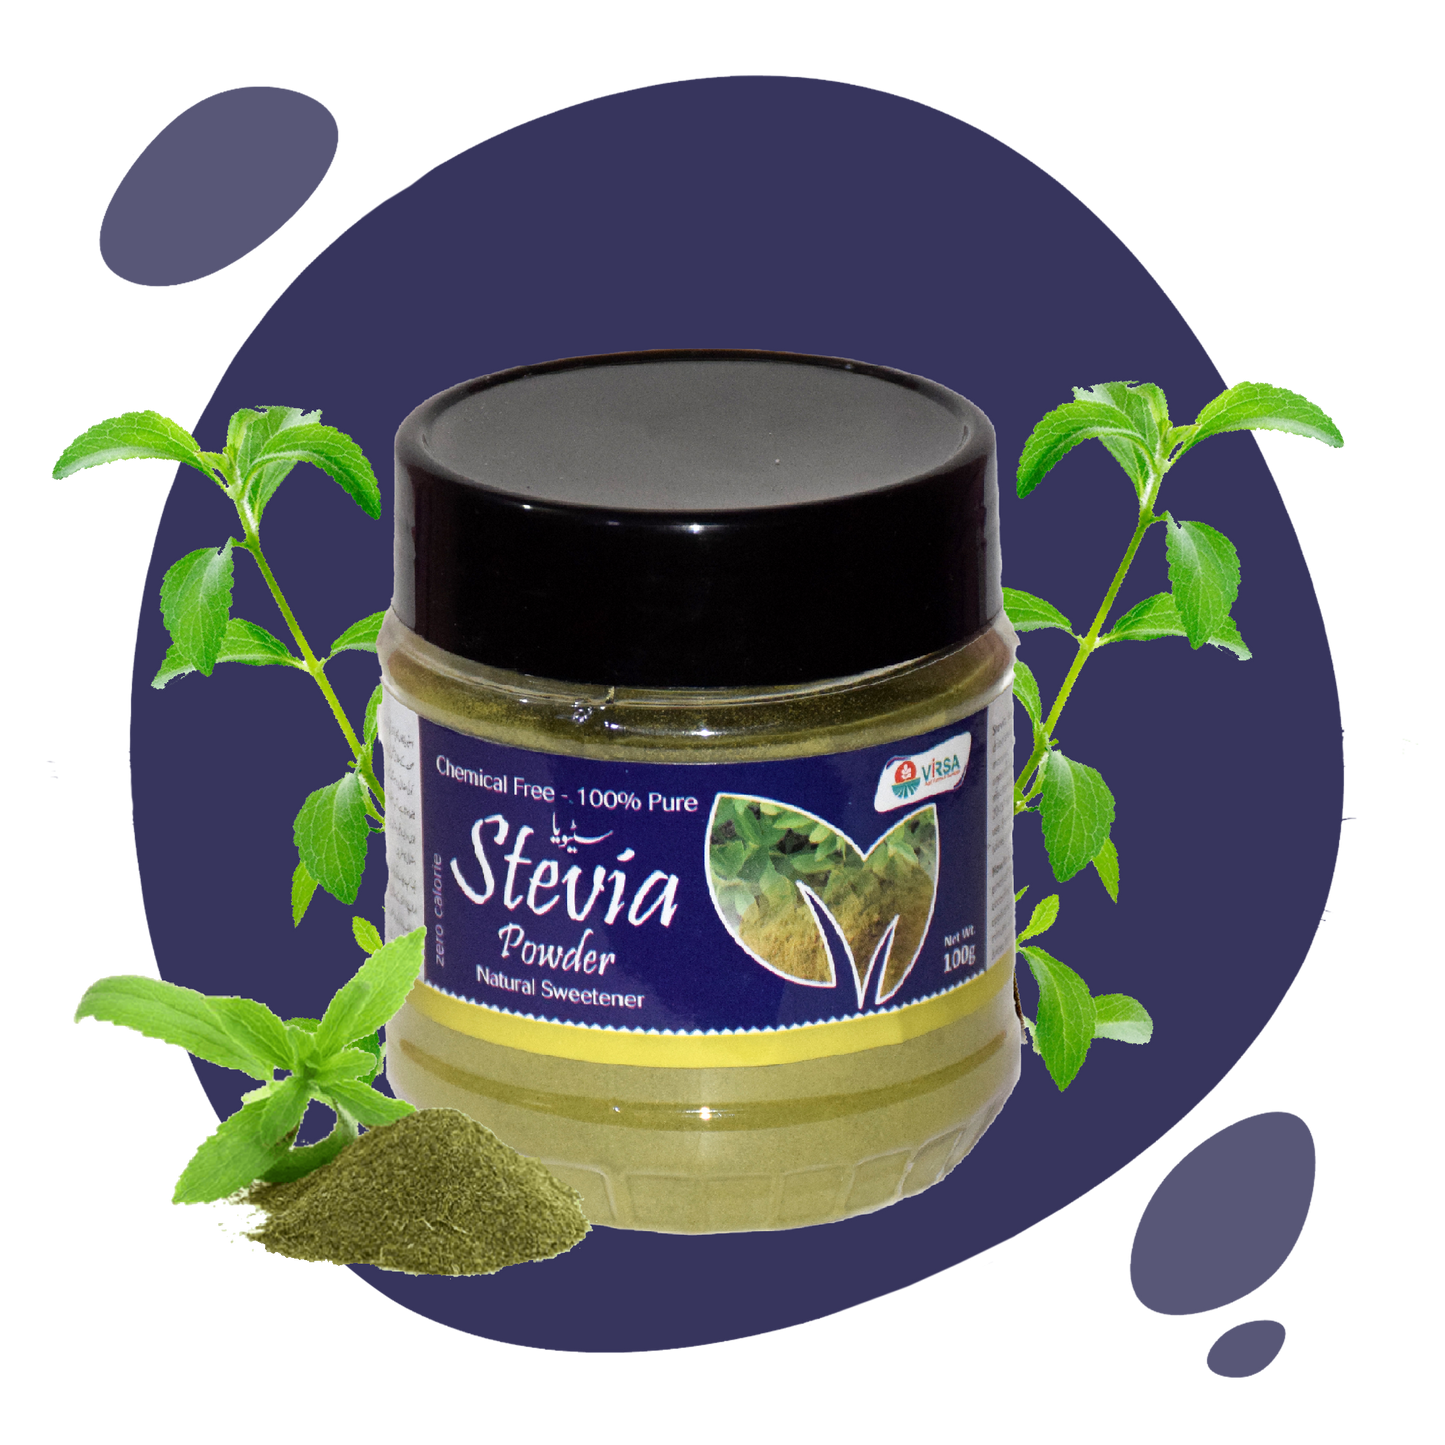 Virsa Organic Stevia -100g